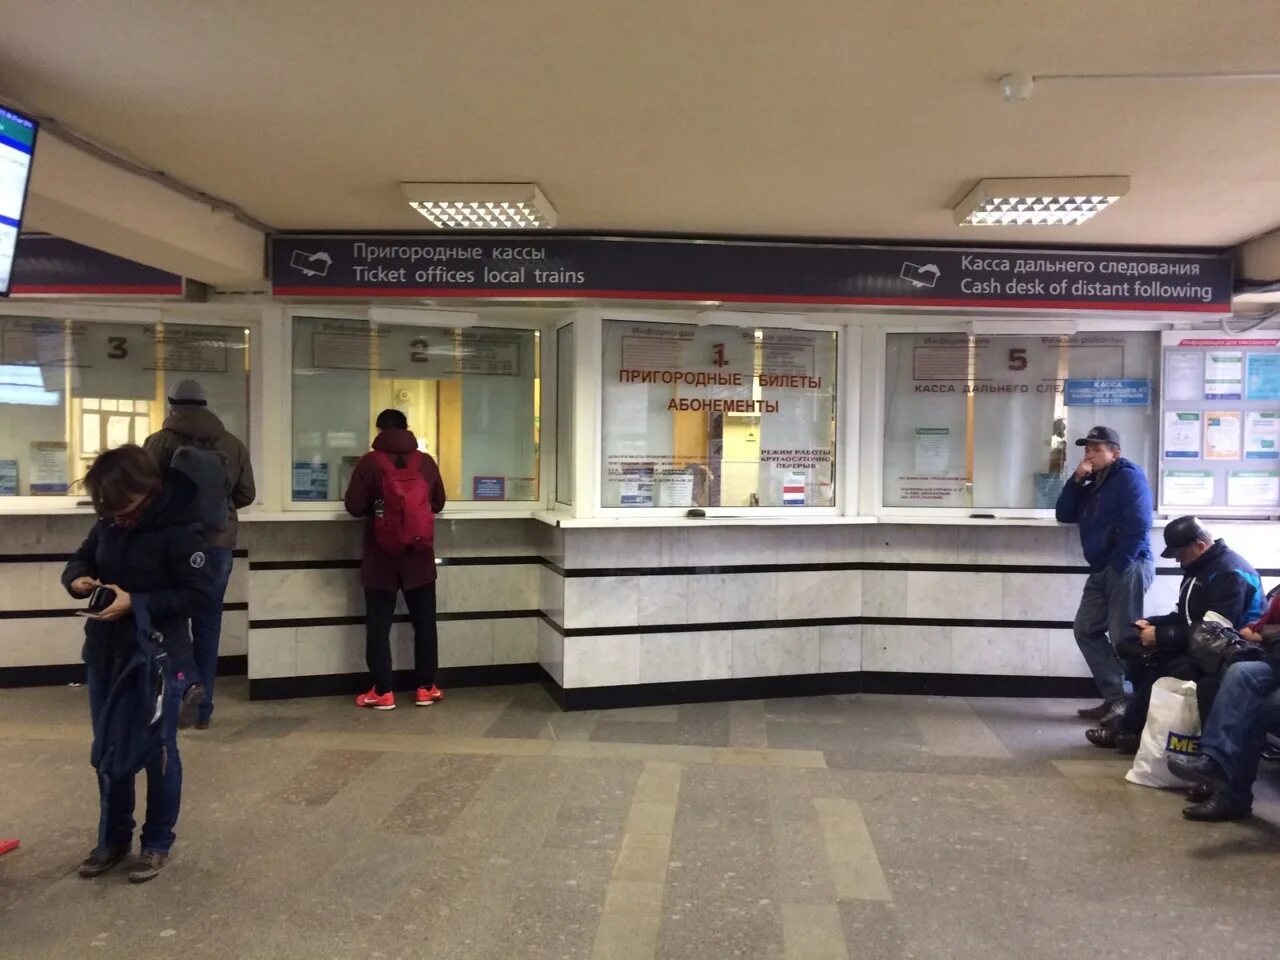 Пригородные кассы ЖД вокзала Новосибирск. Кассы железнодорожных билетов. Касса на вокзале. Билетная касса ЖД. Кассы ржд телефоны справочной